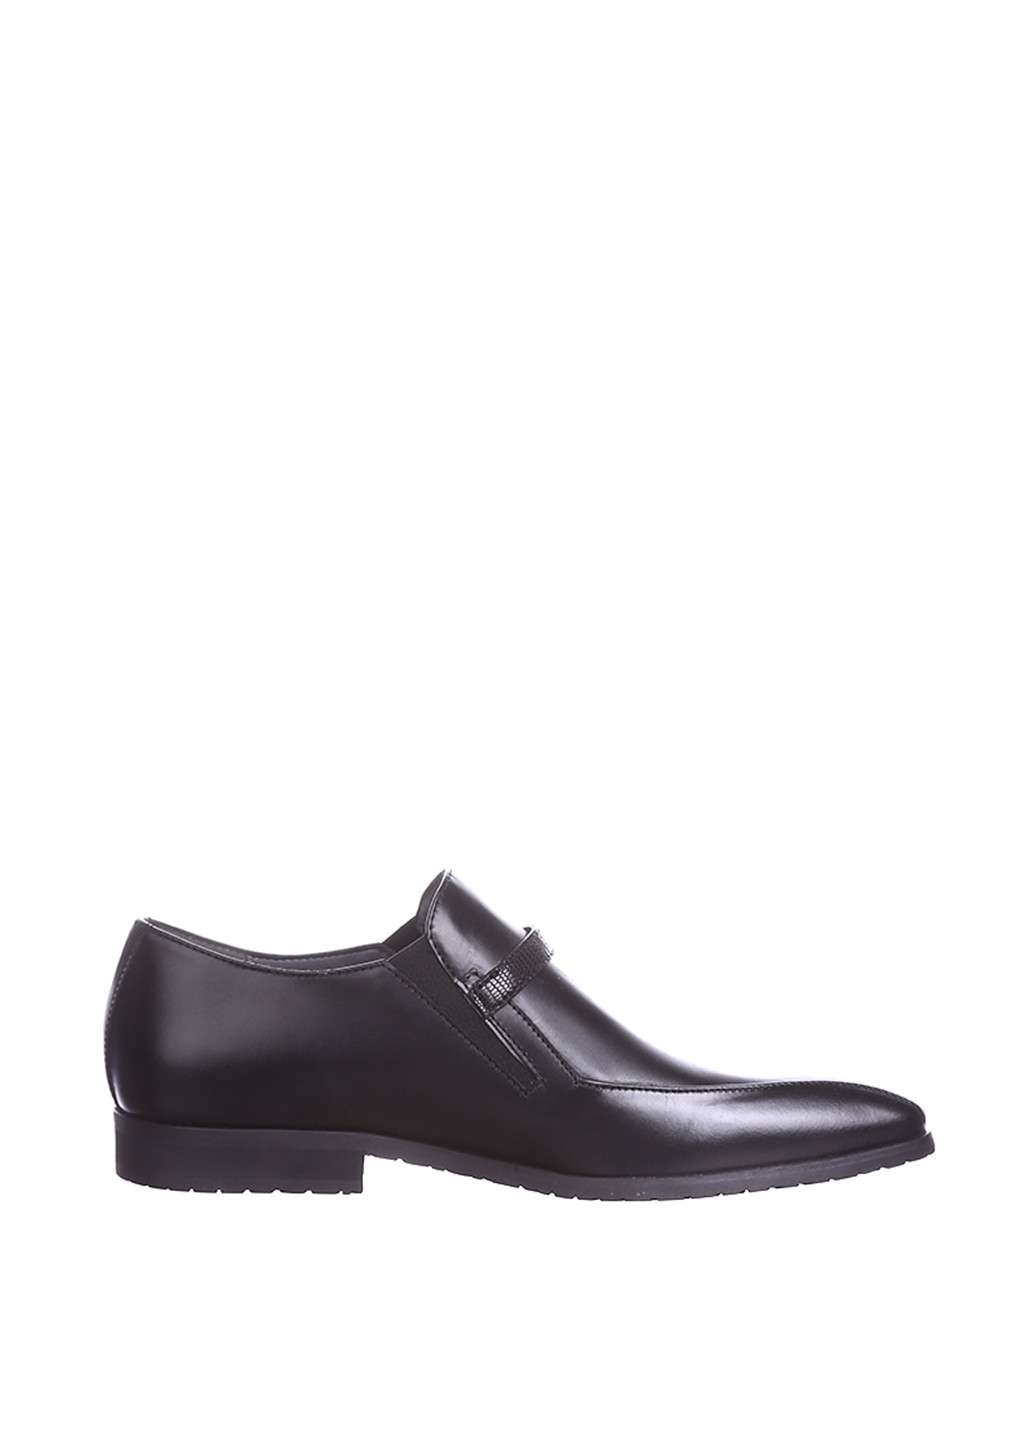 Черные классические туфли Cesare Paciotti